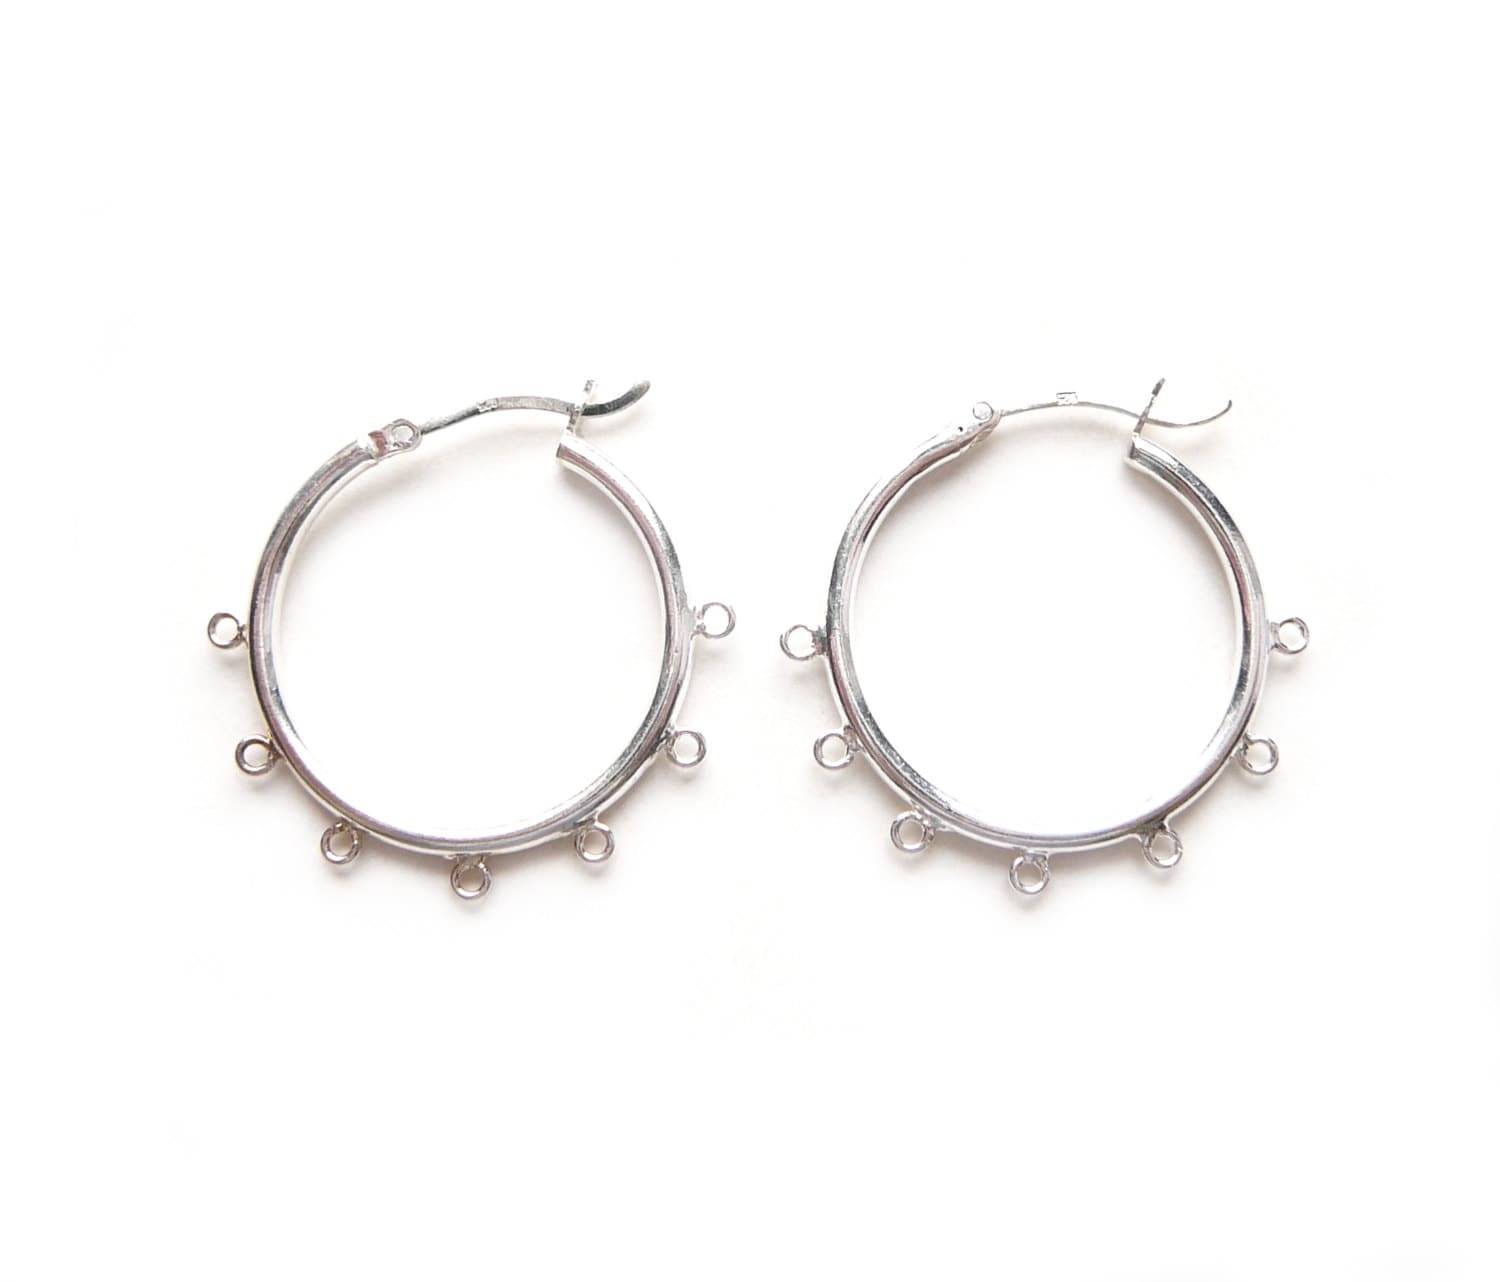 1 Pair 25mm Sterling Silver Round Chandelier Hoop Earrings